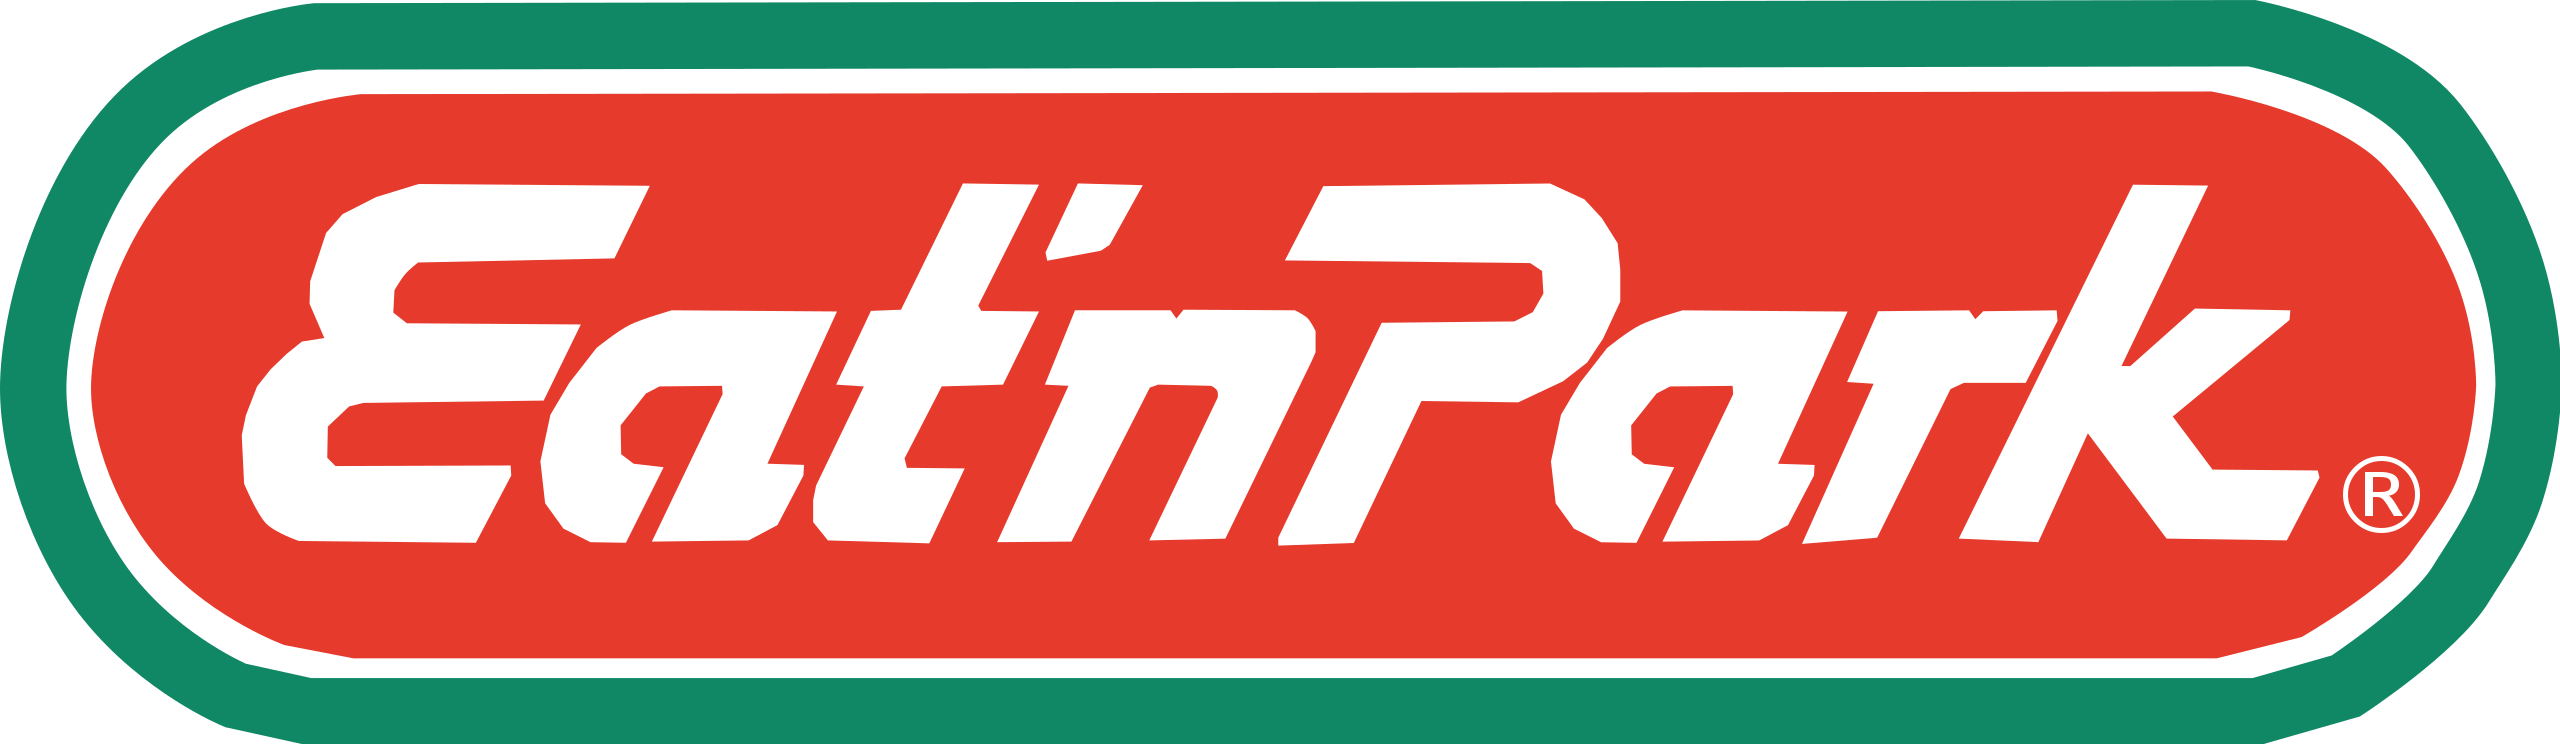 Eat_n_Park_logo.svg